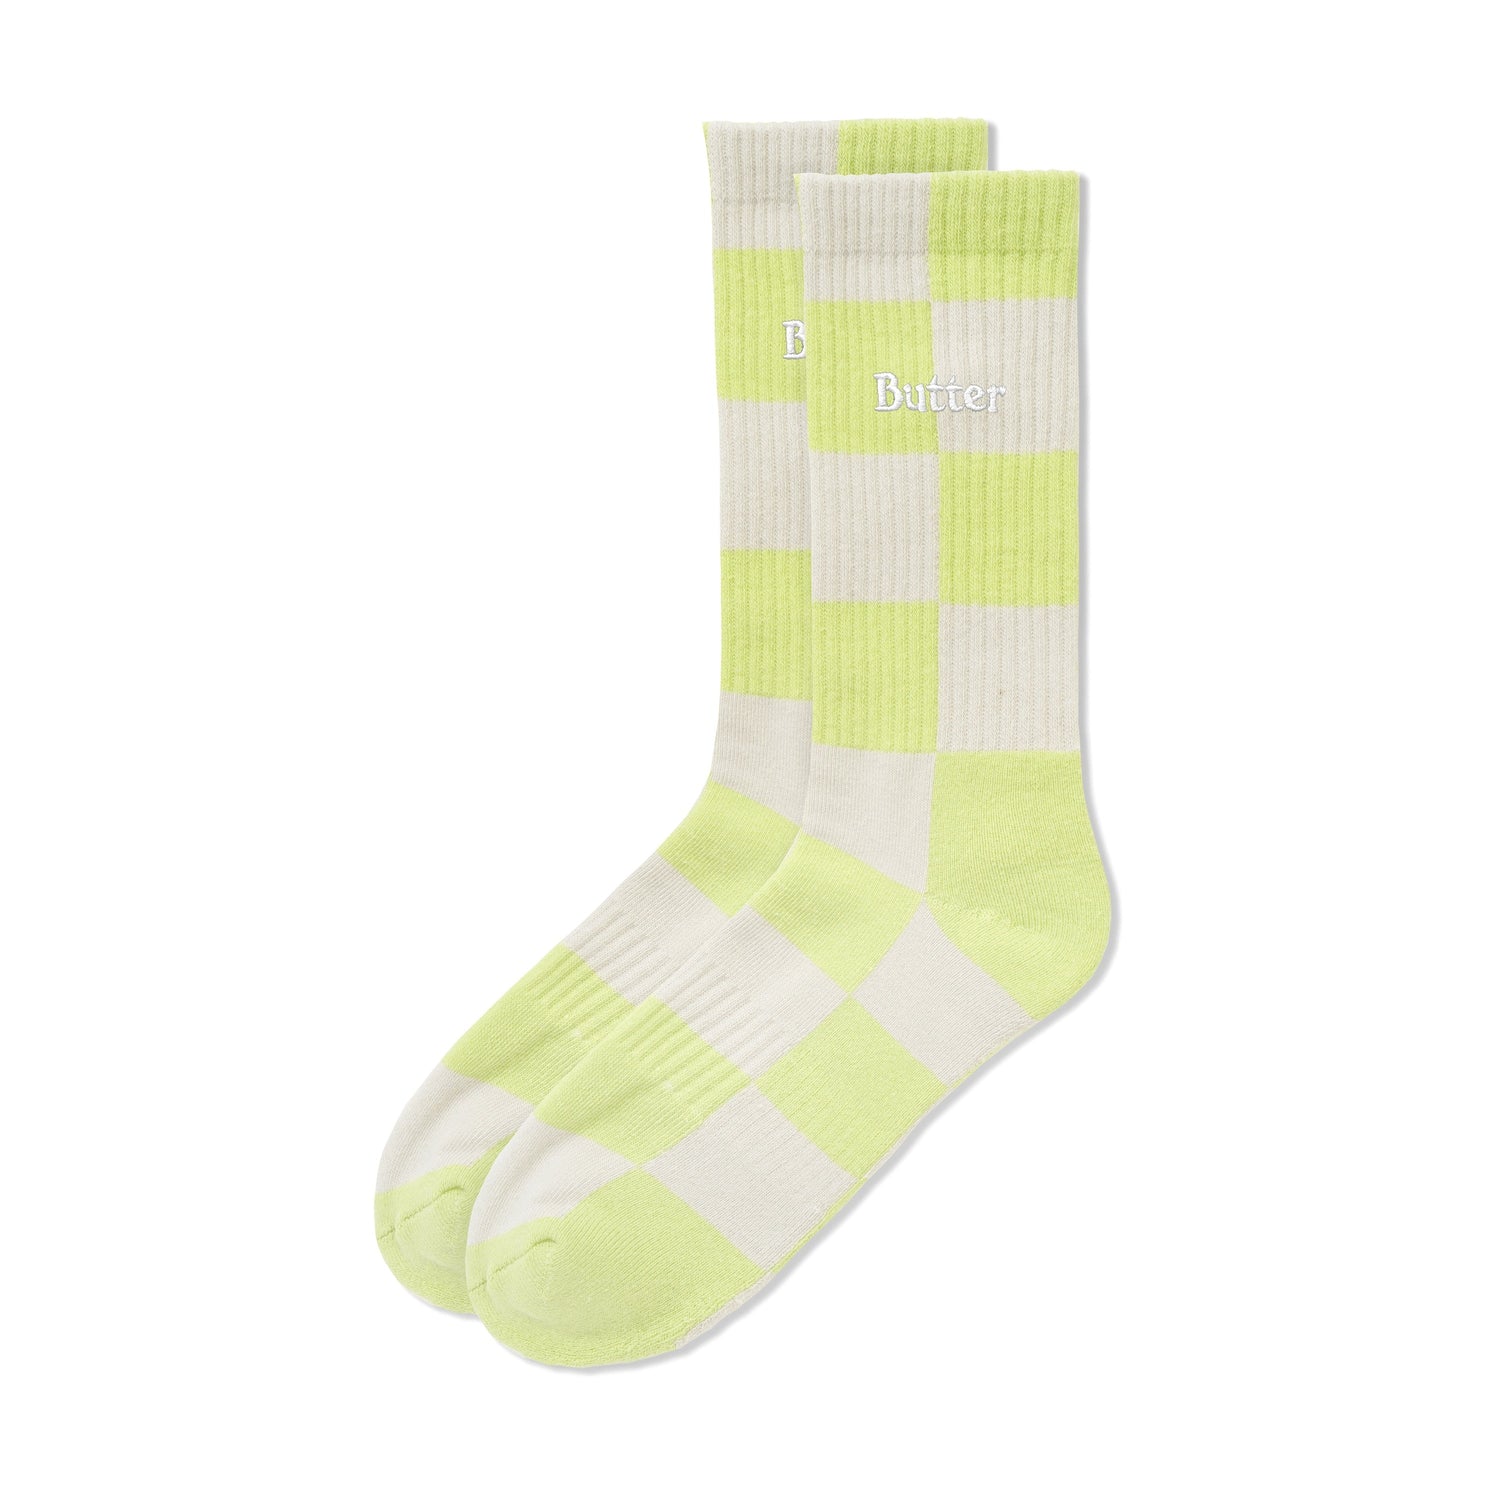 Checkered Socks, Grey / Lime